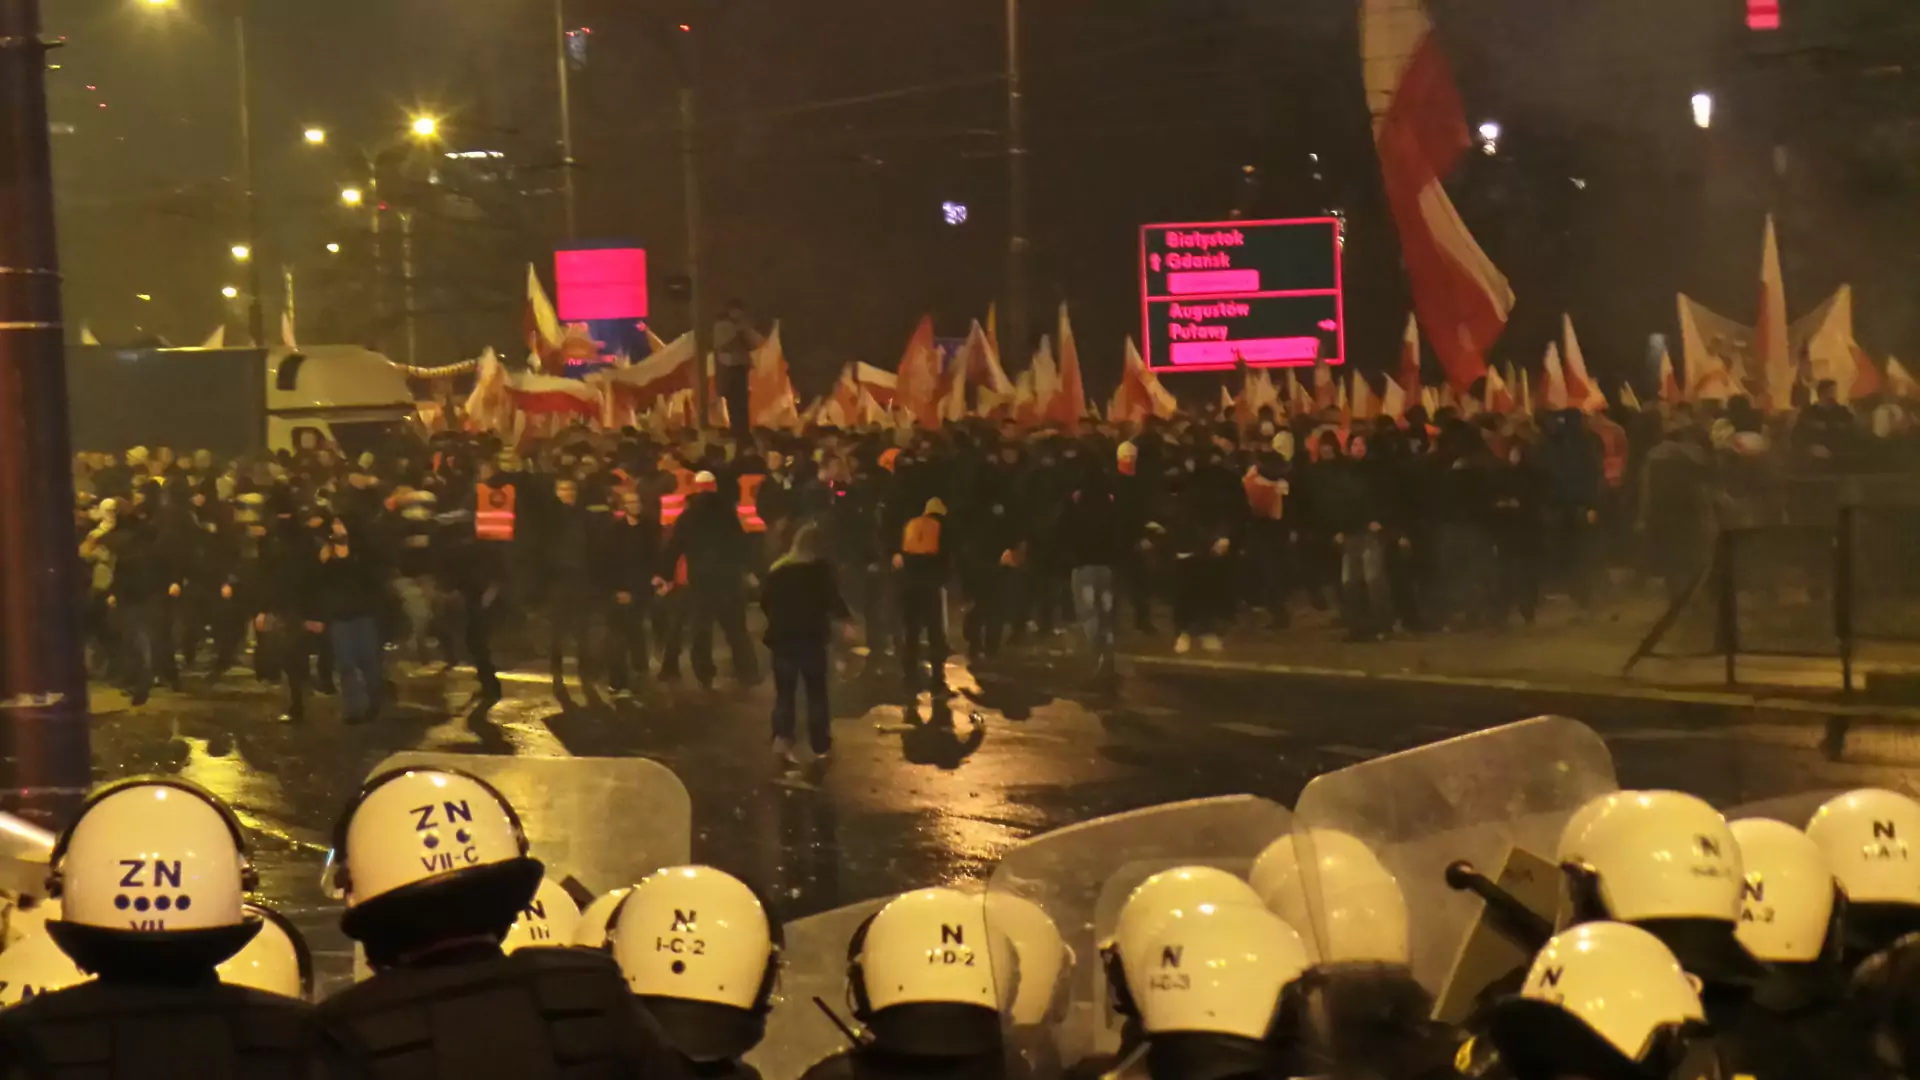 Obcokrajowcy w Polsce ostrzegają. "11 listopada nie wychodźcie z domów!"